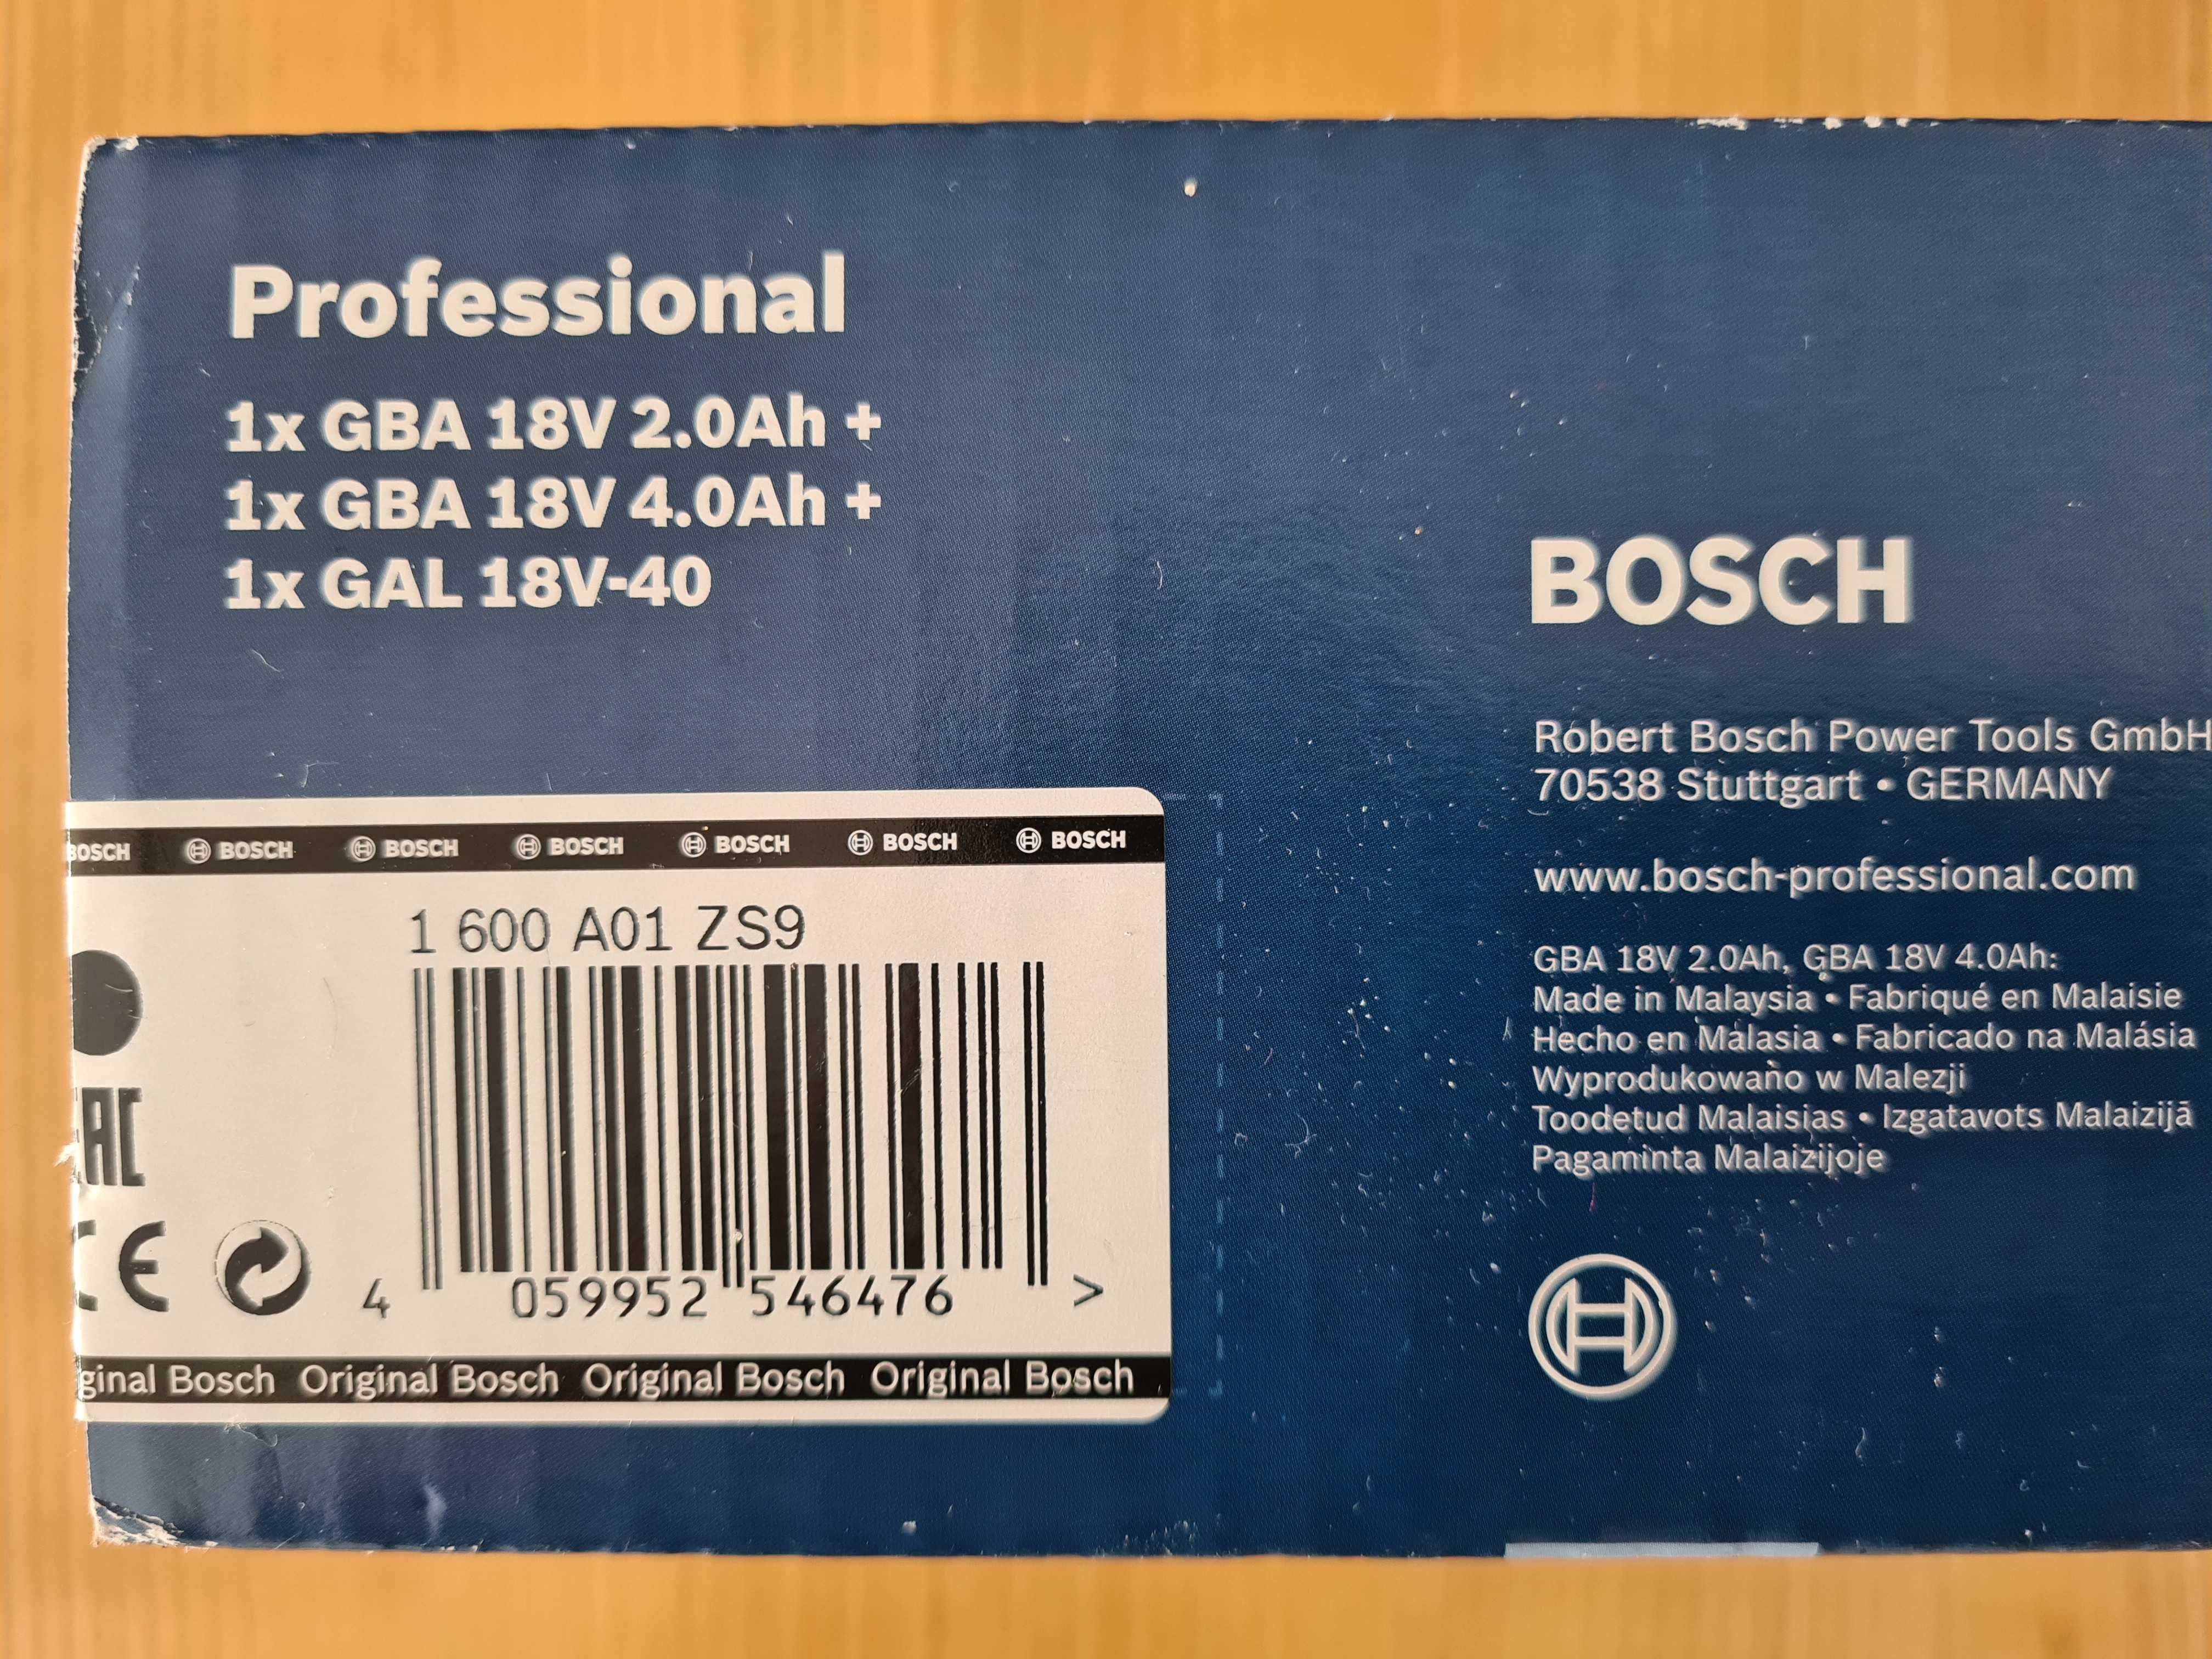 Bosch Professional Zestaw startowy GBA 18V 2Ah/GBA 18V 4Ah/GAL 18V-40